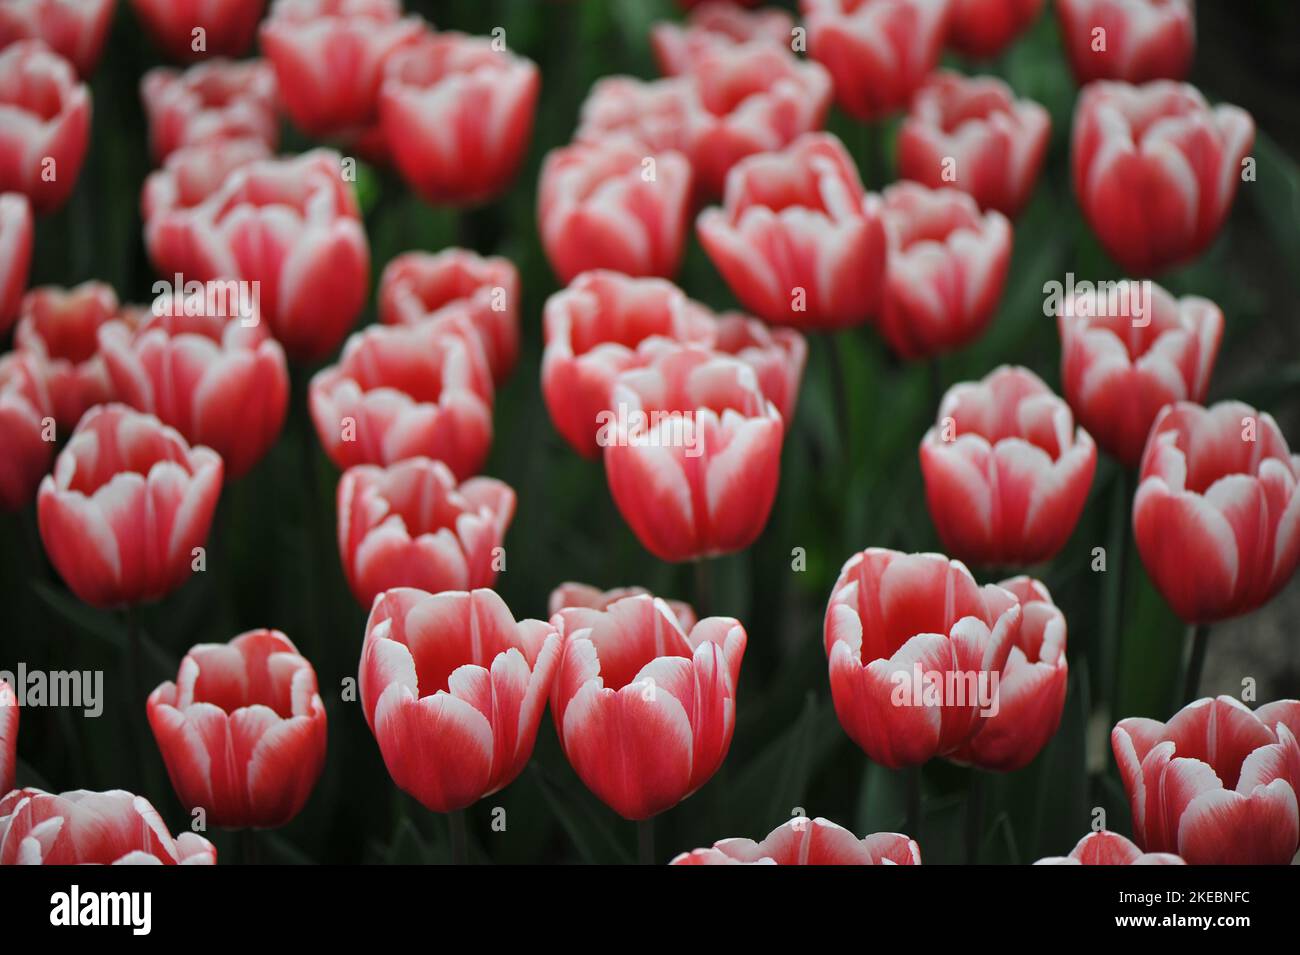 Rosso con bordi bianchi tulipani Triumph (Tulipa) fioritura senza tempo in un giardino nel mese di marzo Foto Stock